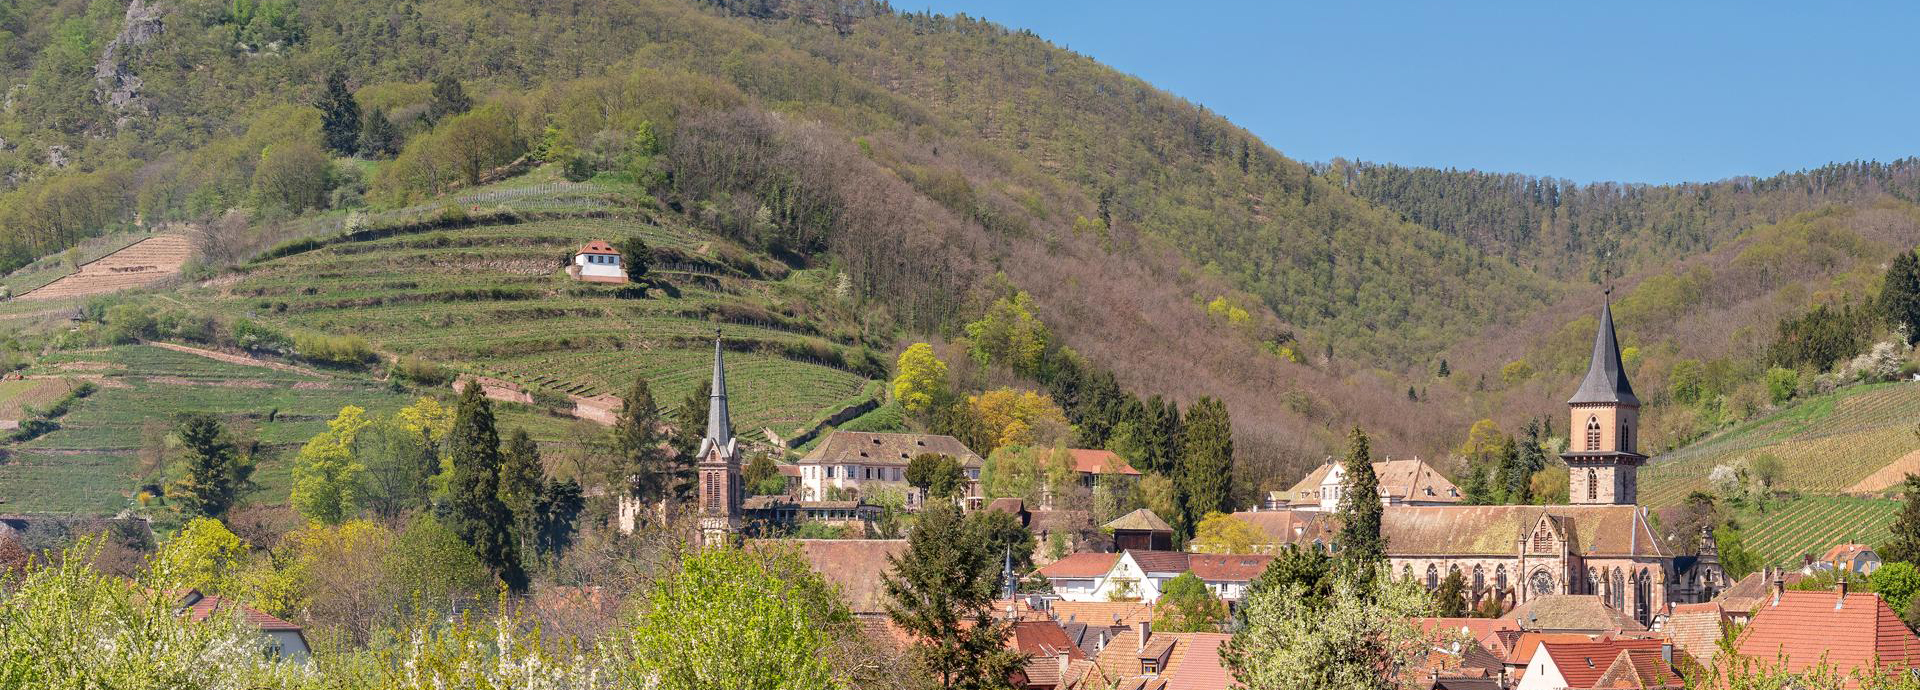 Ribeauvillé, een middeleeuws dorp in de Elzas